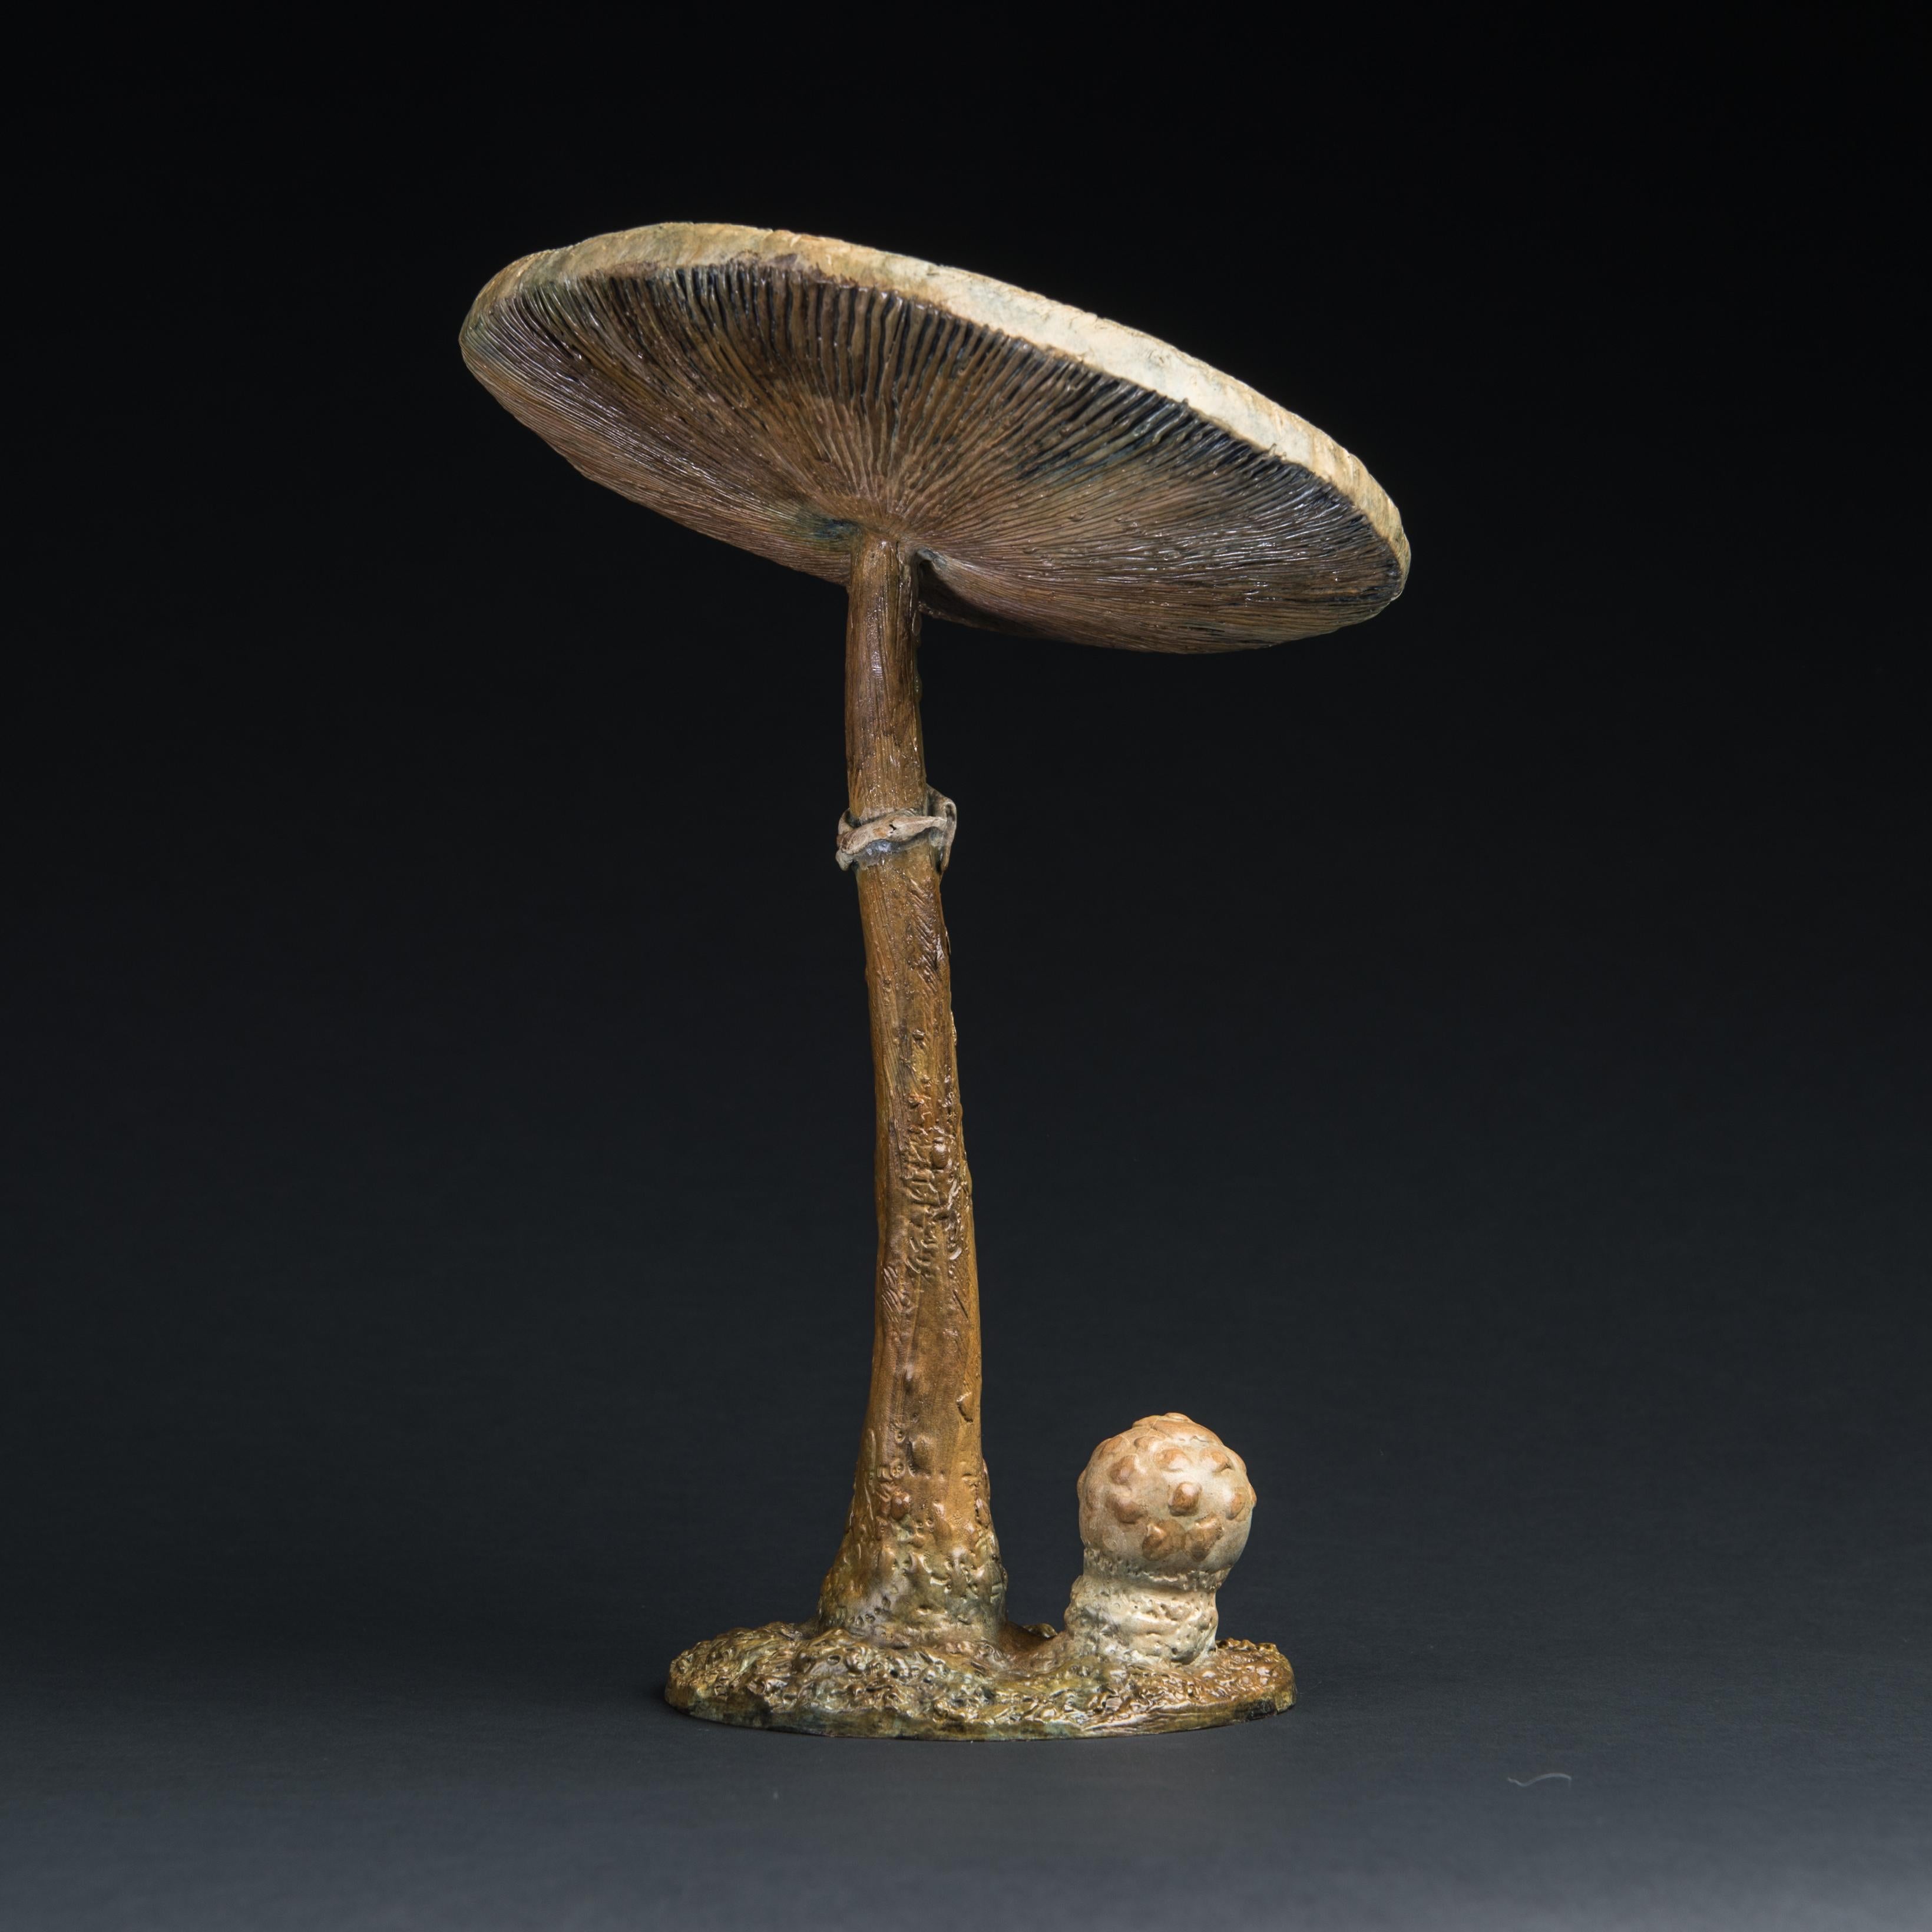 « Parasol Mushroom », sculpture contemporaine en bronze d'un champignon, faune sauvage - Contemporain Sculpture par Richard Smith